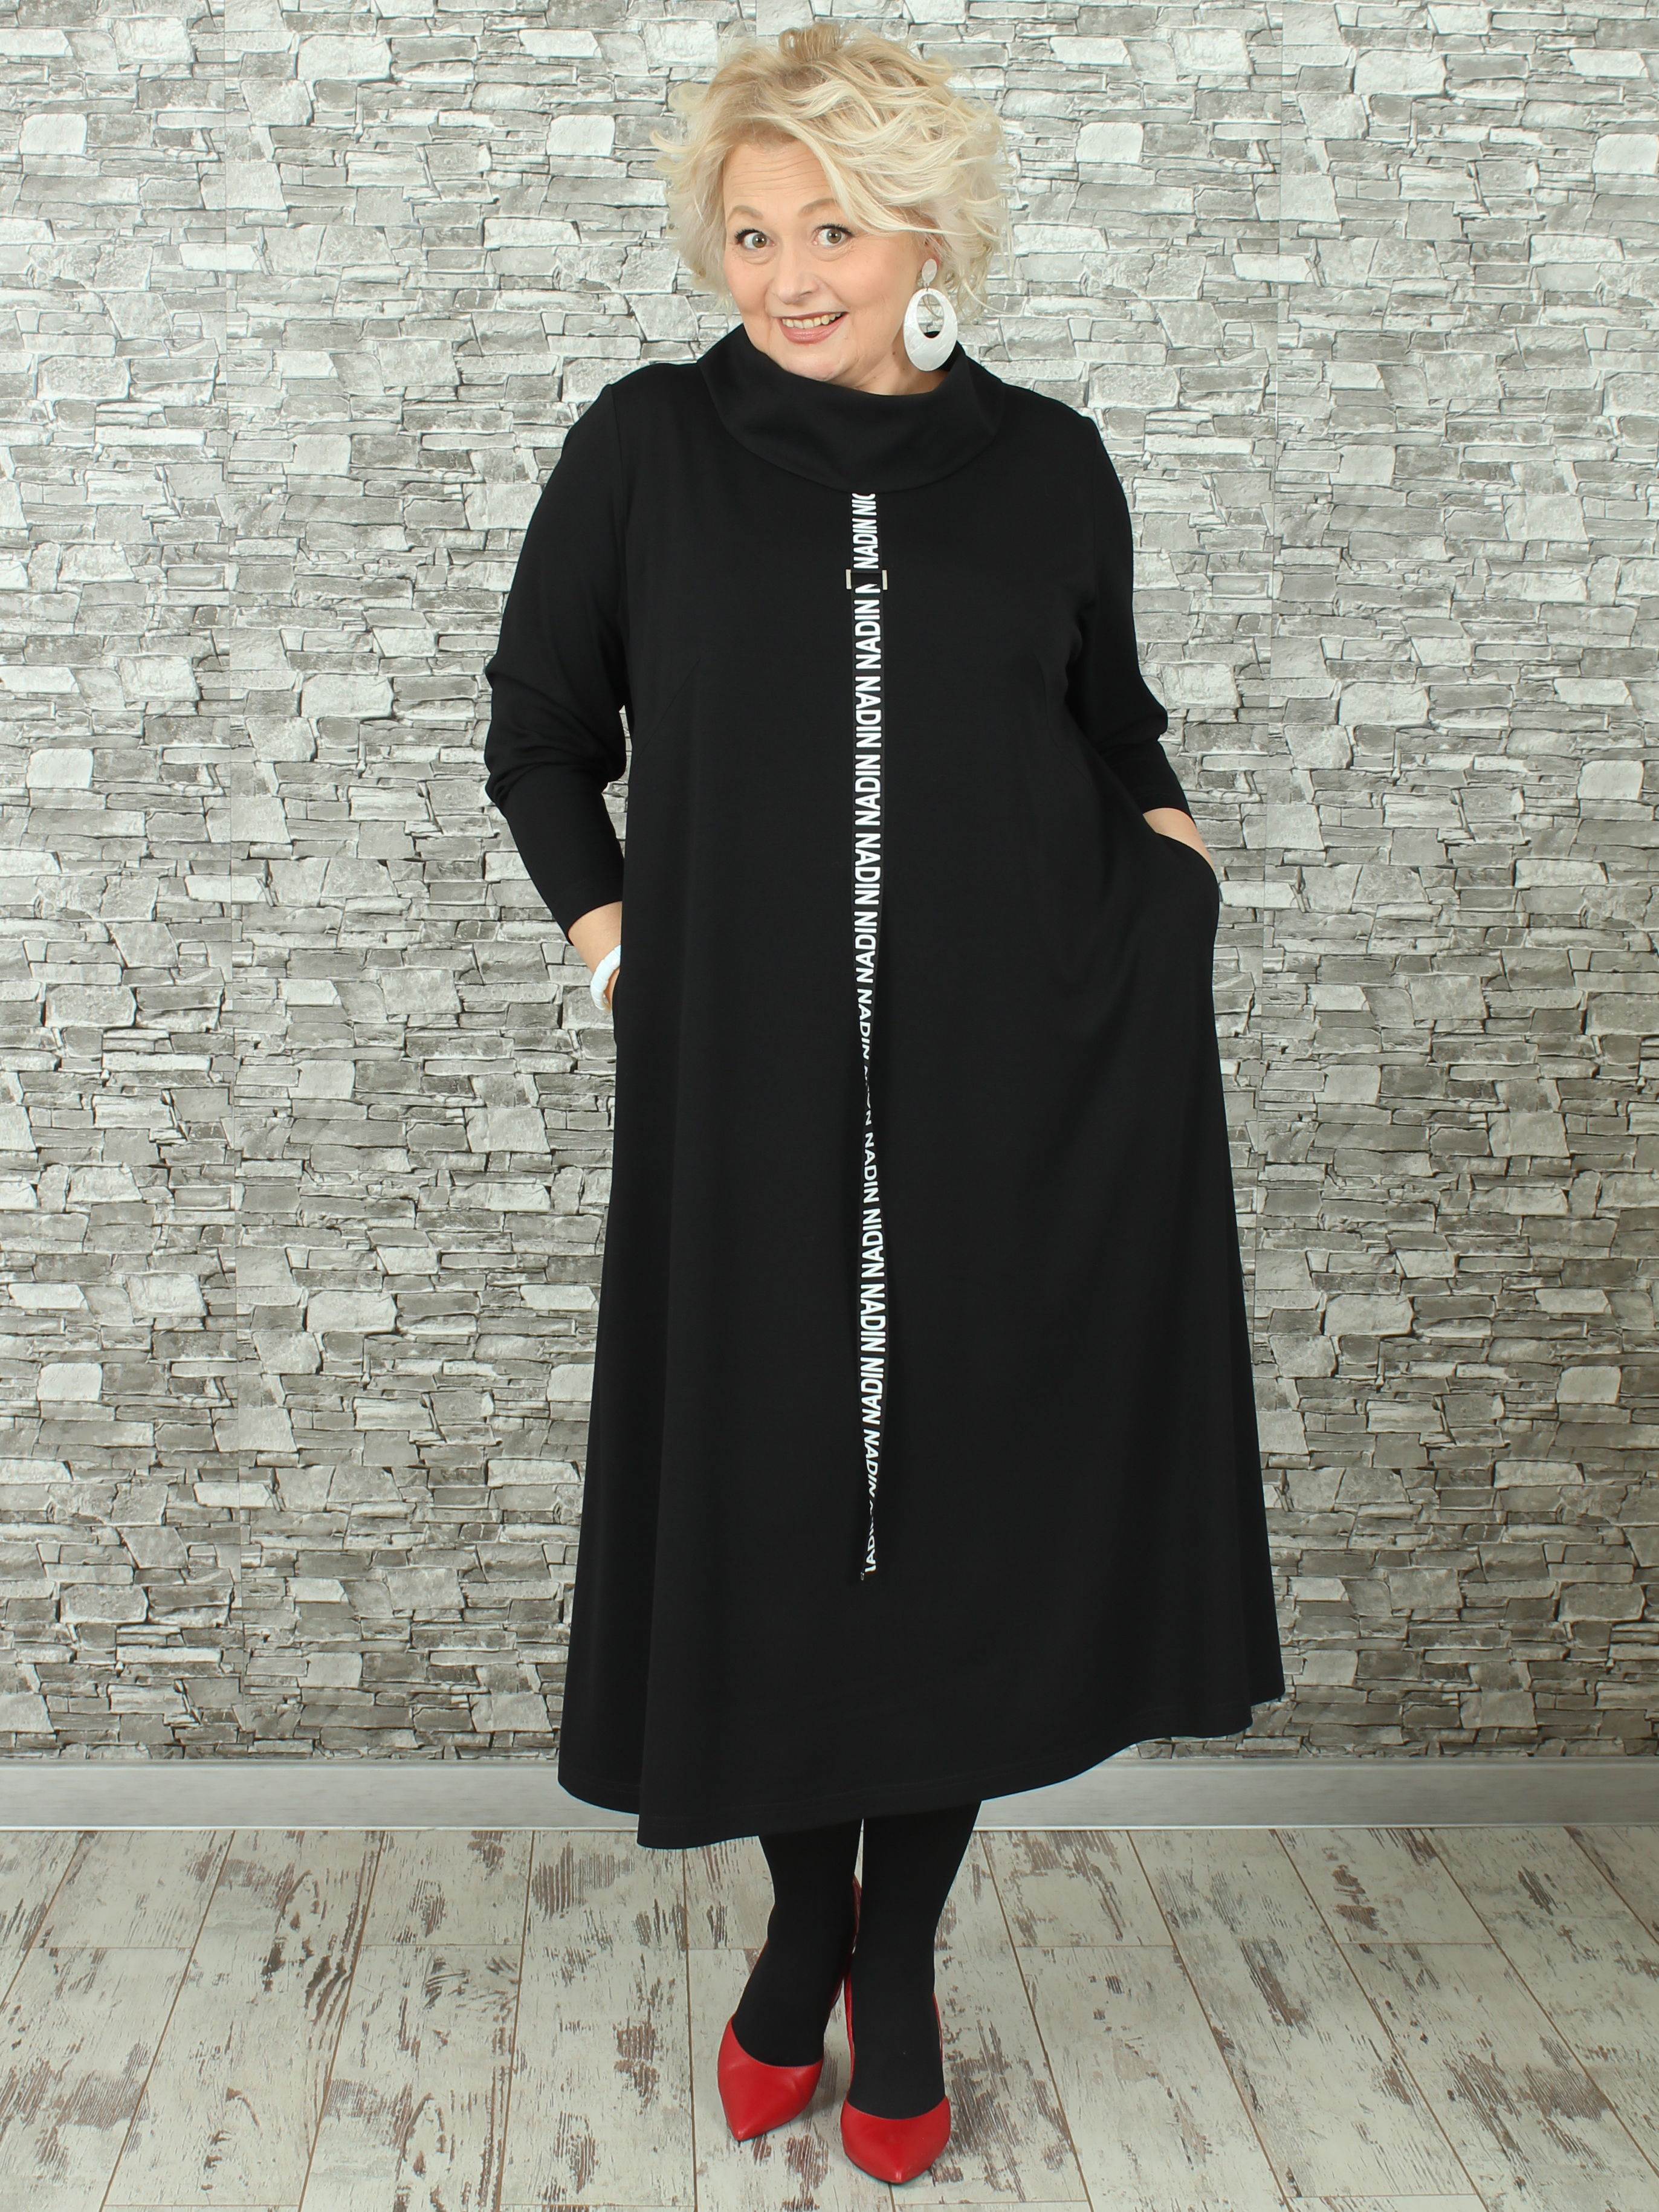 Женское платье NadiN 1676/1 54 размер Чёрное